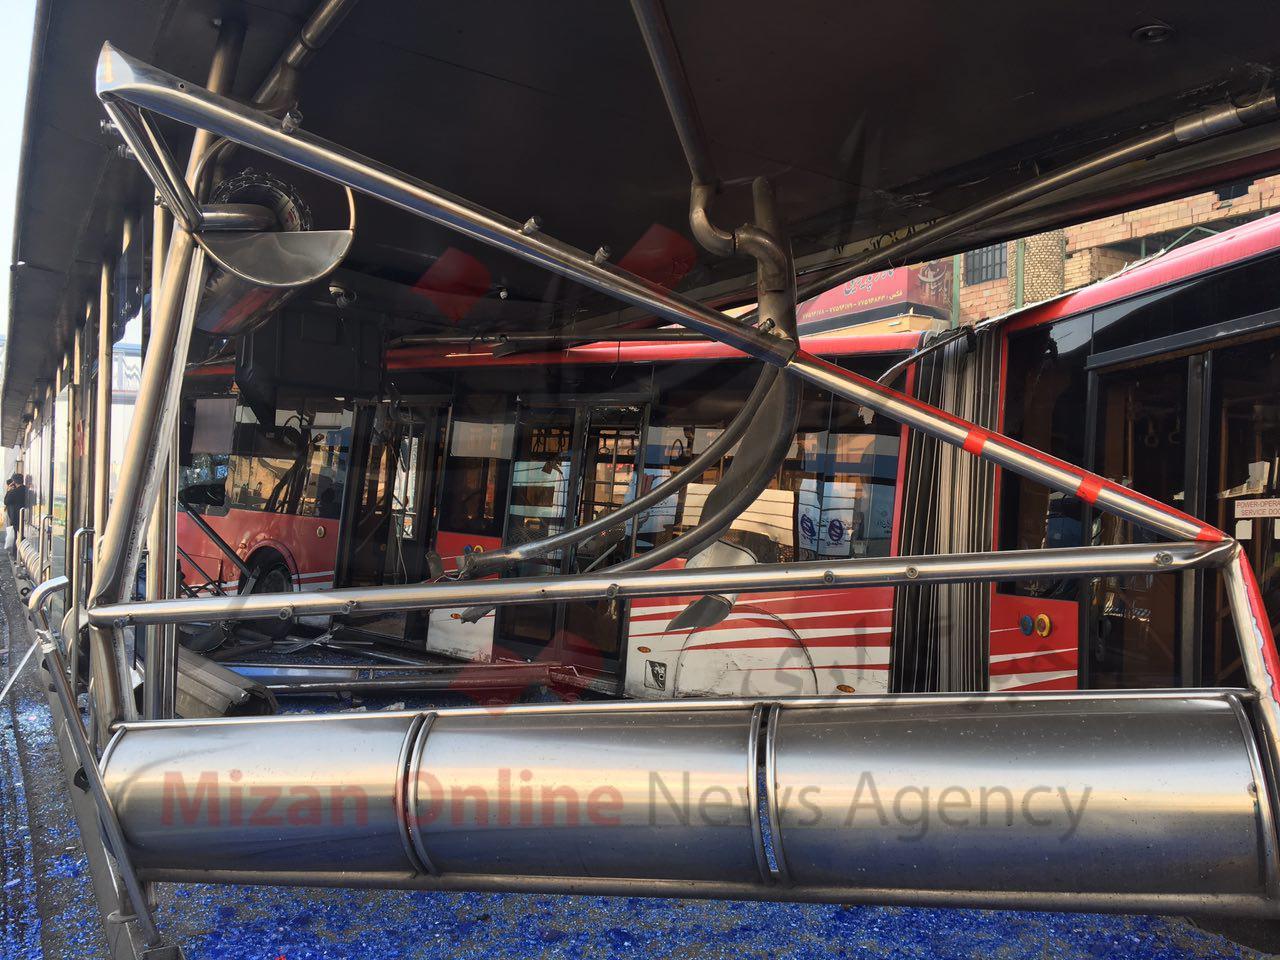 ورود سرزده اتوبوس بی. آر.تی به ایستگاه دو شهروند را مجروح کرد+تصاویر